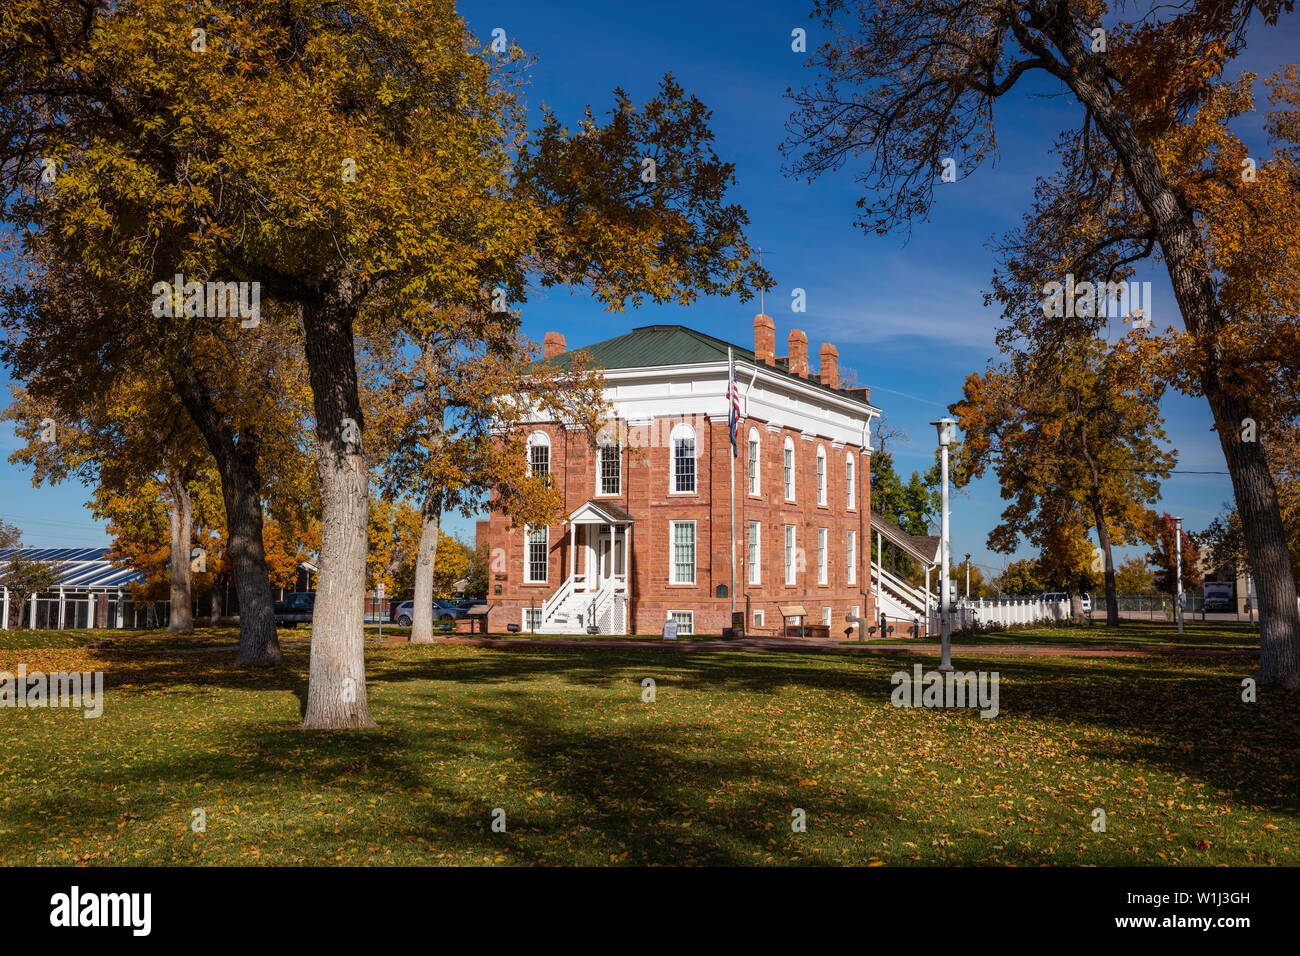 Utah Territorial Statehouse in fall, Fillmore, Utah Stock Photo